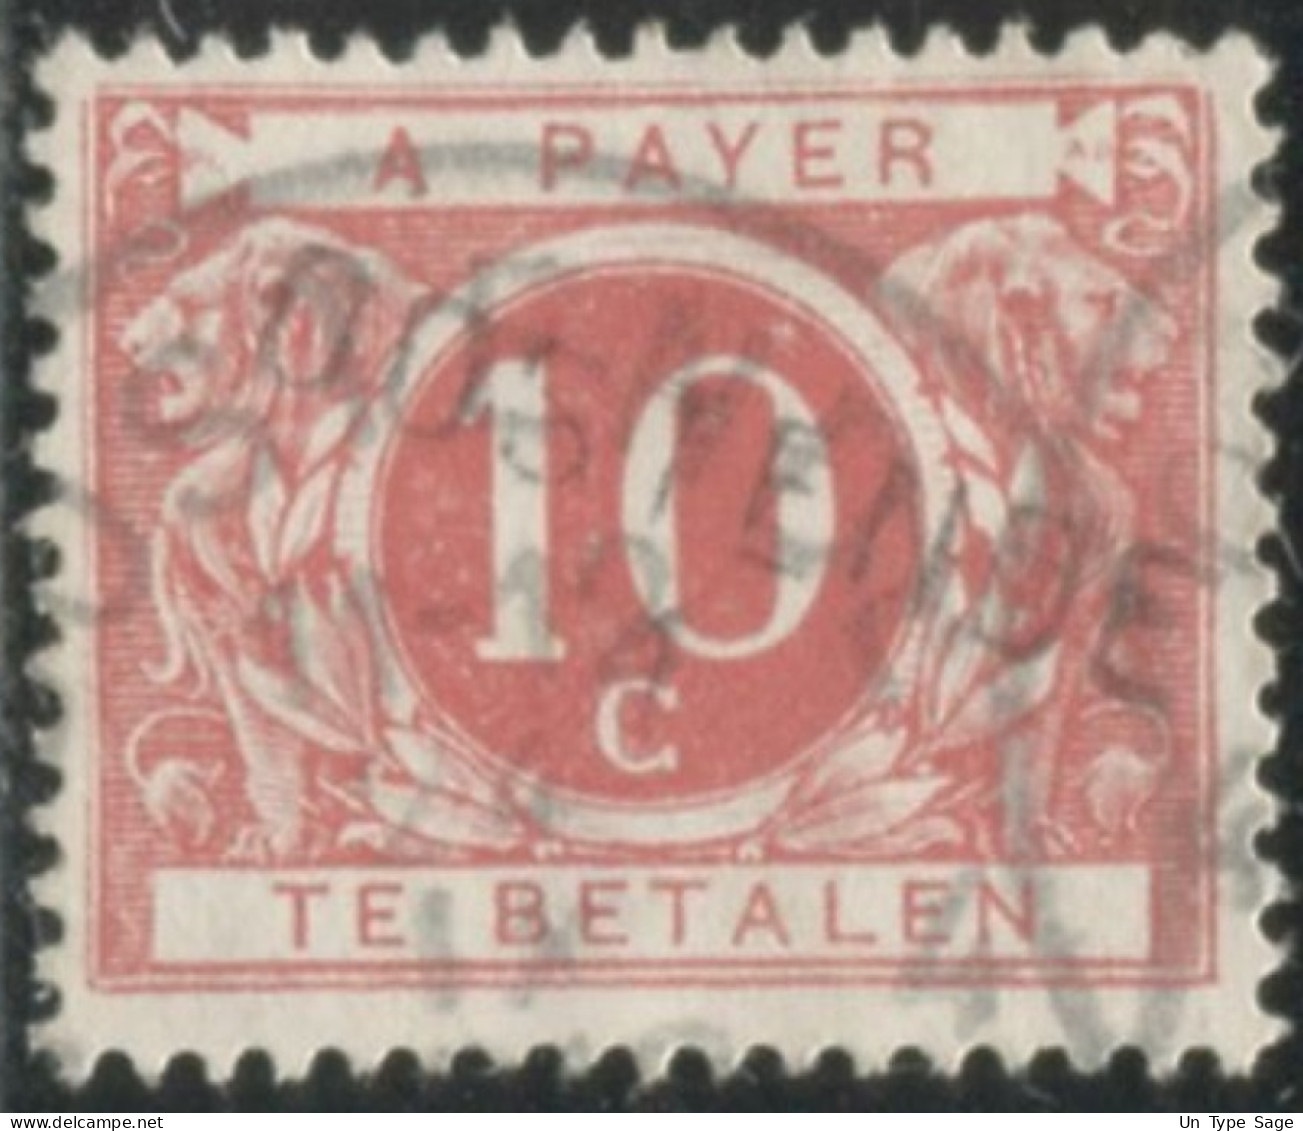 Belgique Timbre-taxe (TX) - Surcharge Locale De Distributeur - OOSTENDE - (F989) - Briefmarken